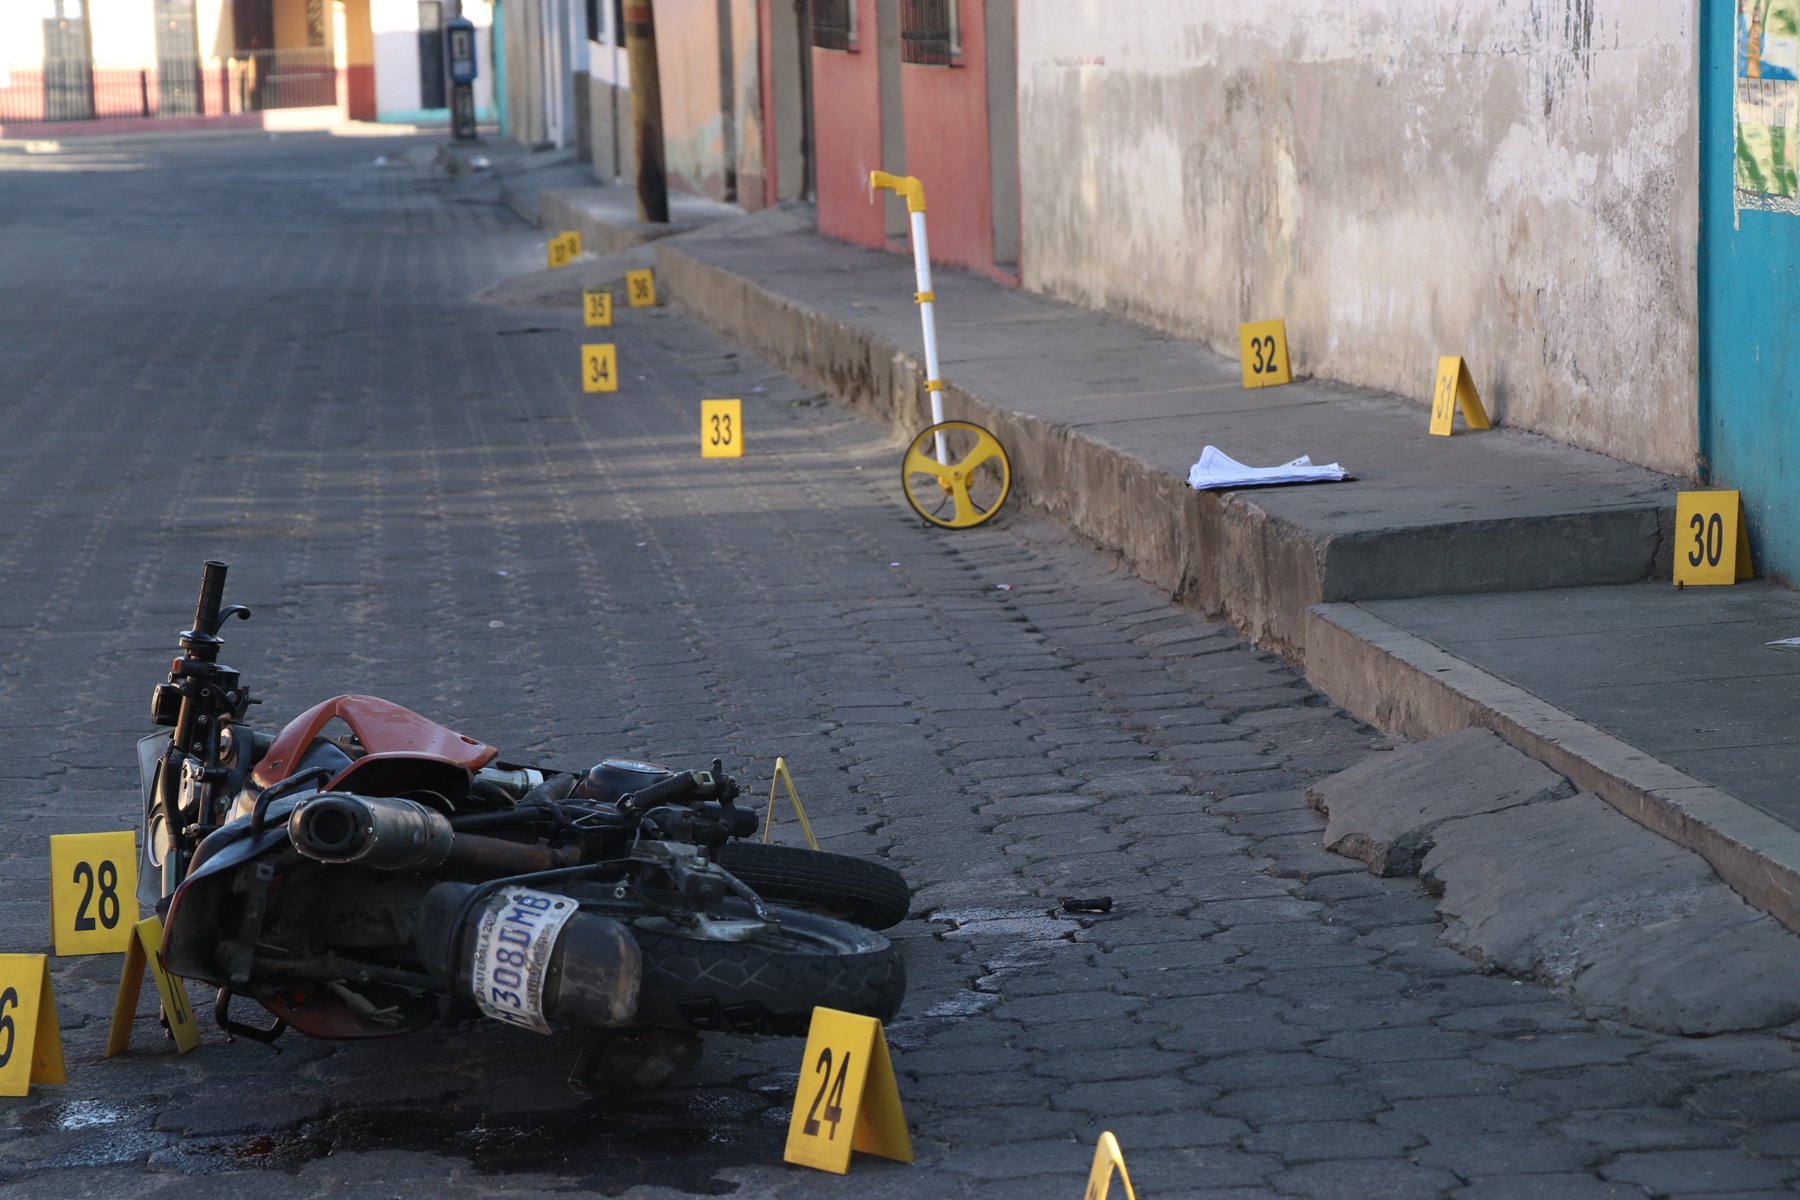 Esta es una de las motocicletas encontradas en la escena. (Foto Prensa Libre: María Longo) 